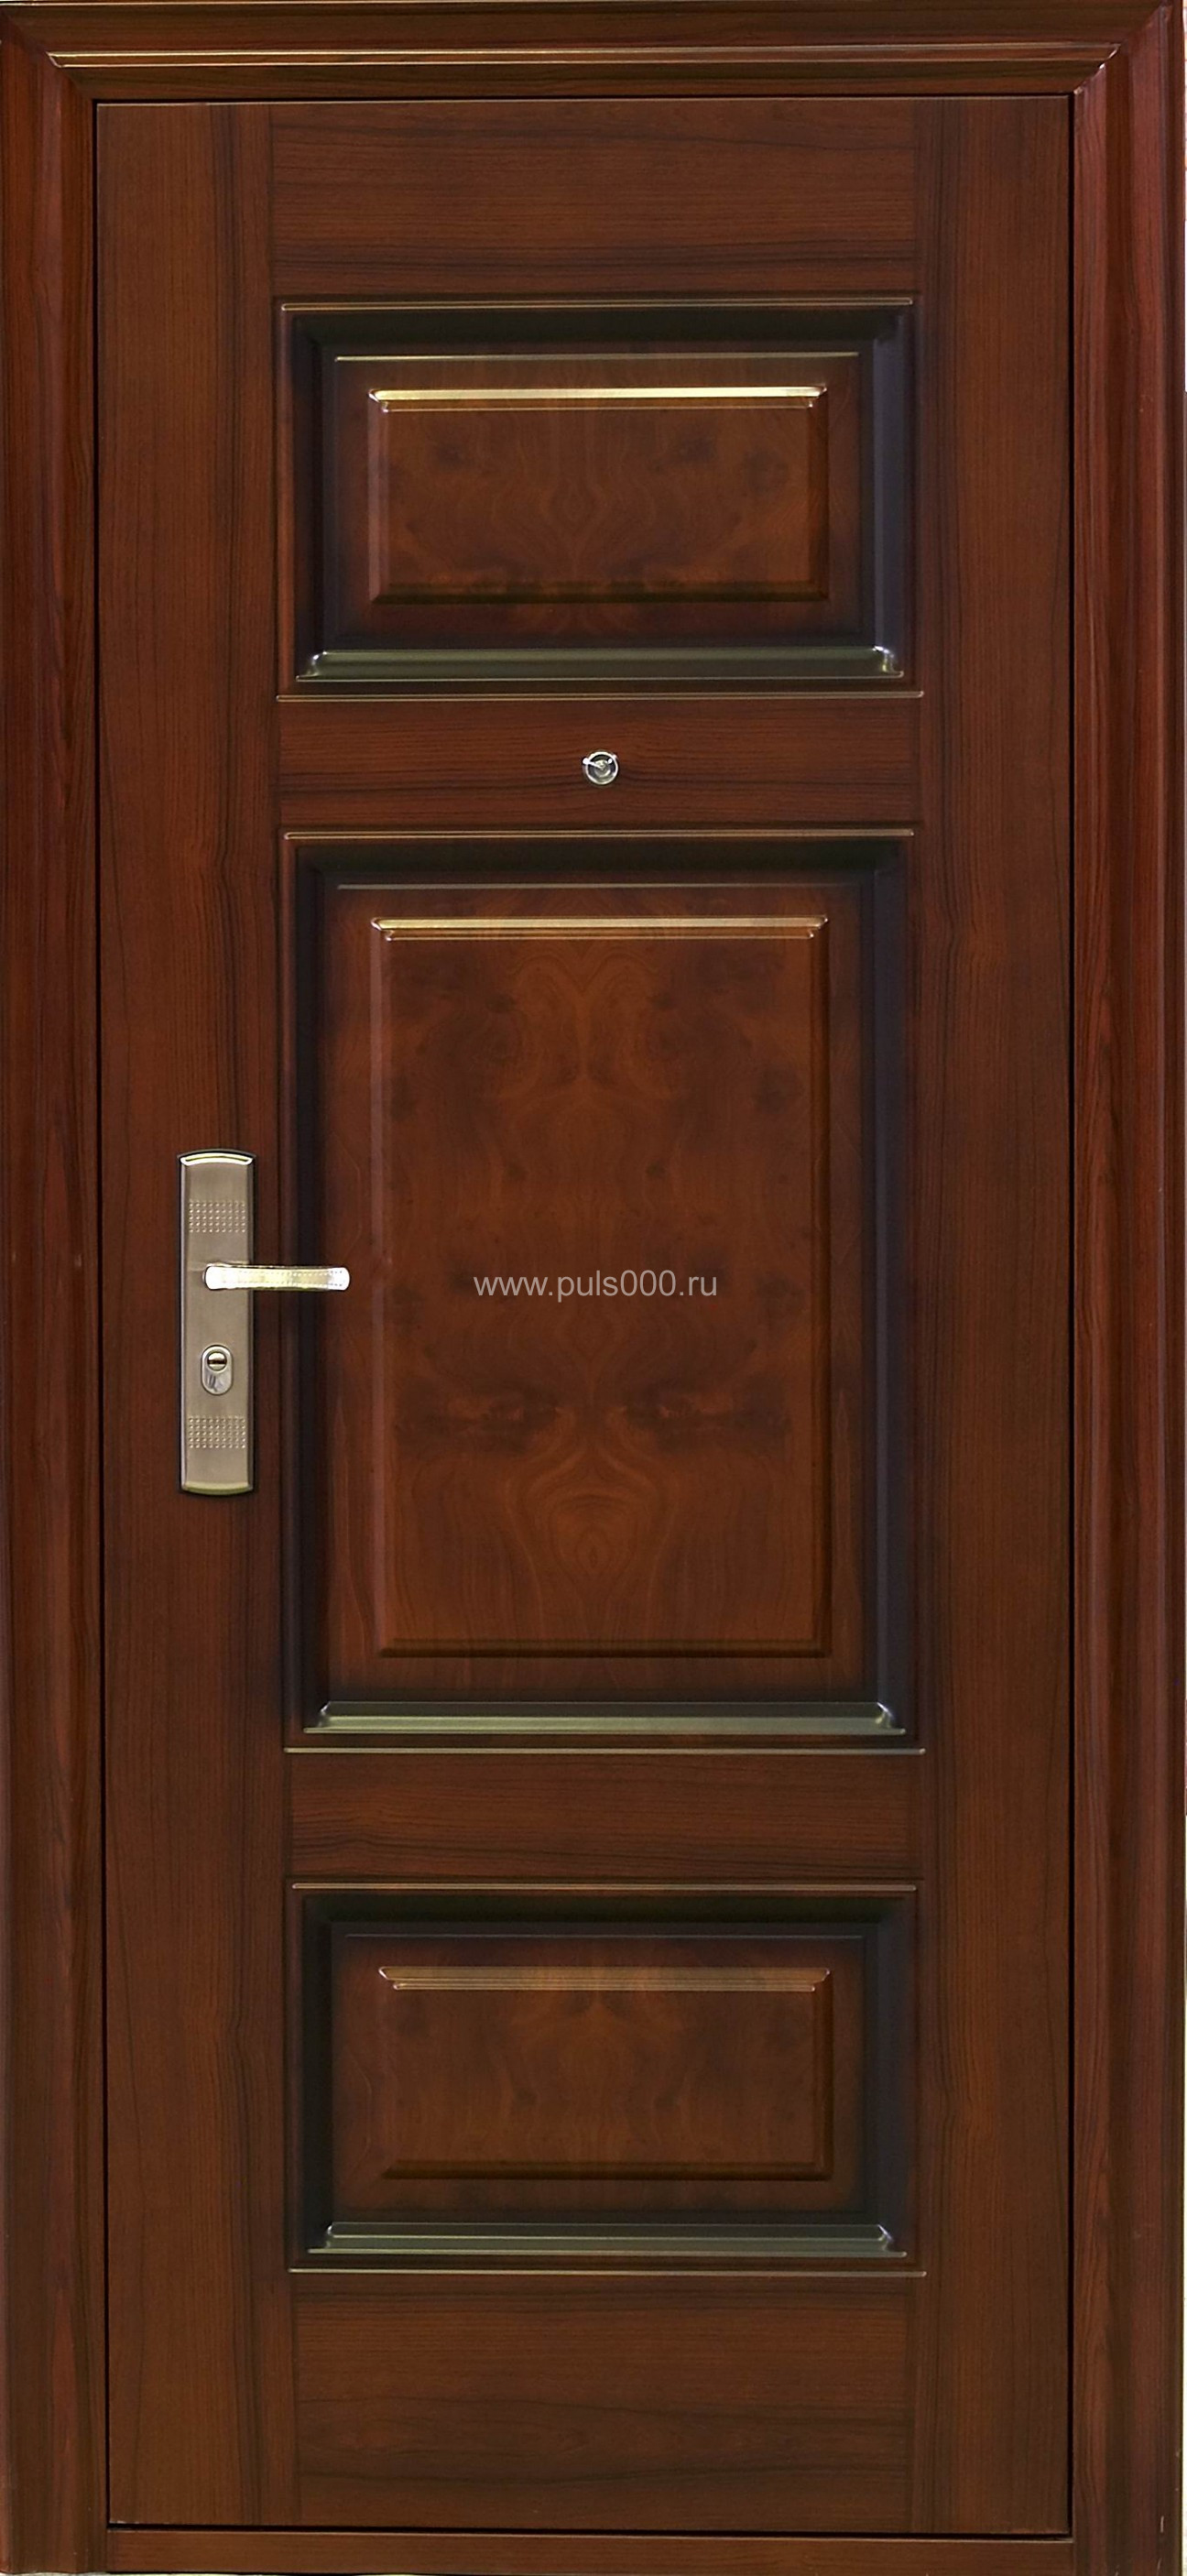 Металлическая дверь из массива дерева MS-1773 + массив, цена 65 500  руб.